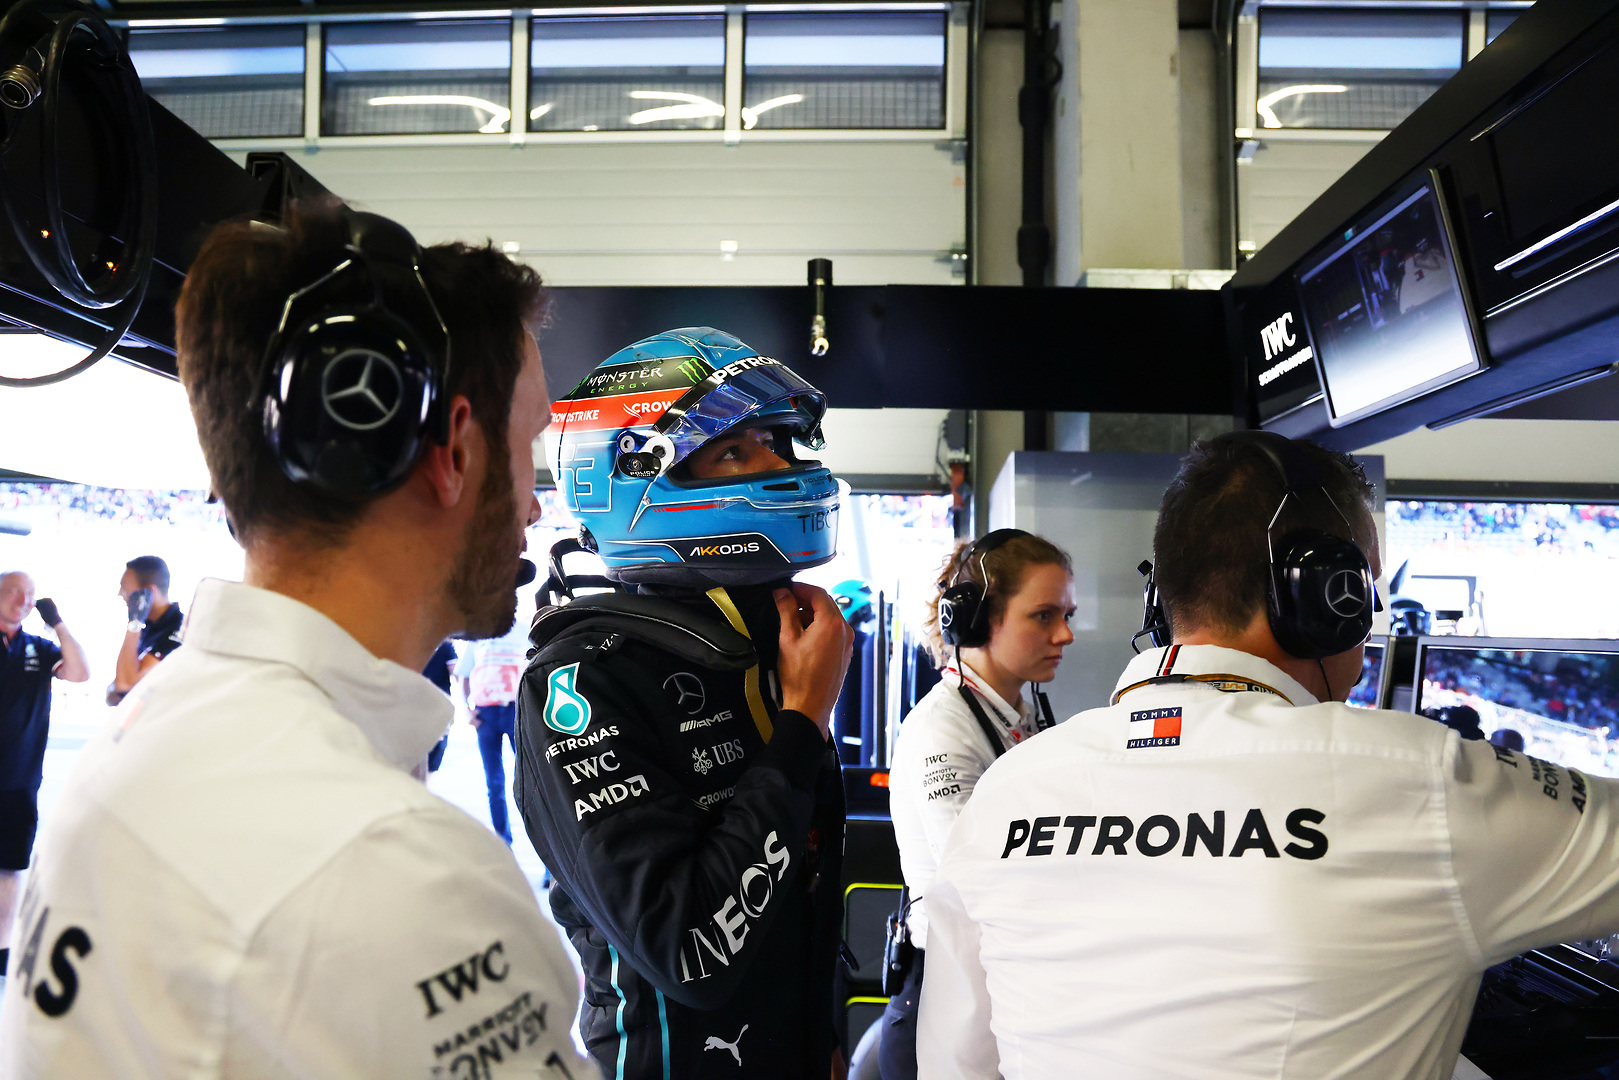 F1 - Les deux pilotes Mercedes désolés après leur erreur en qualifications